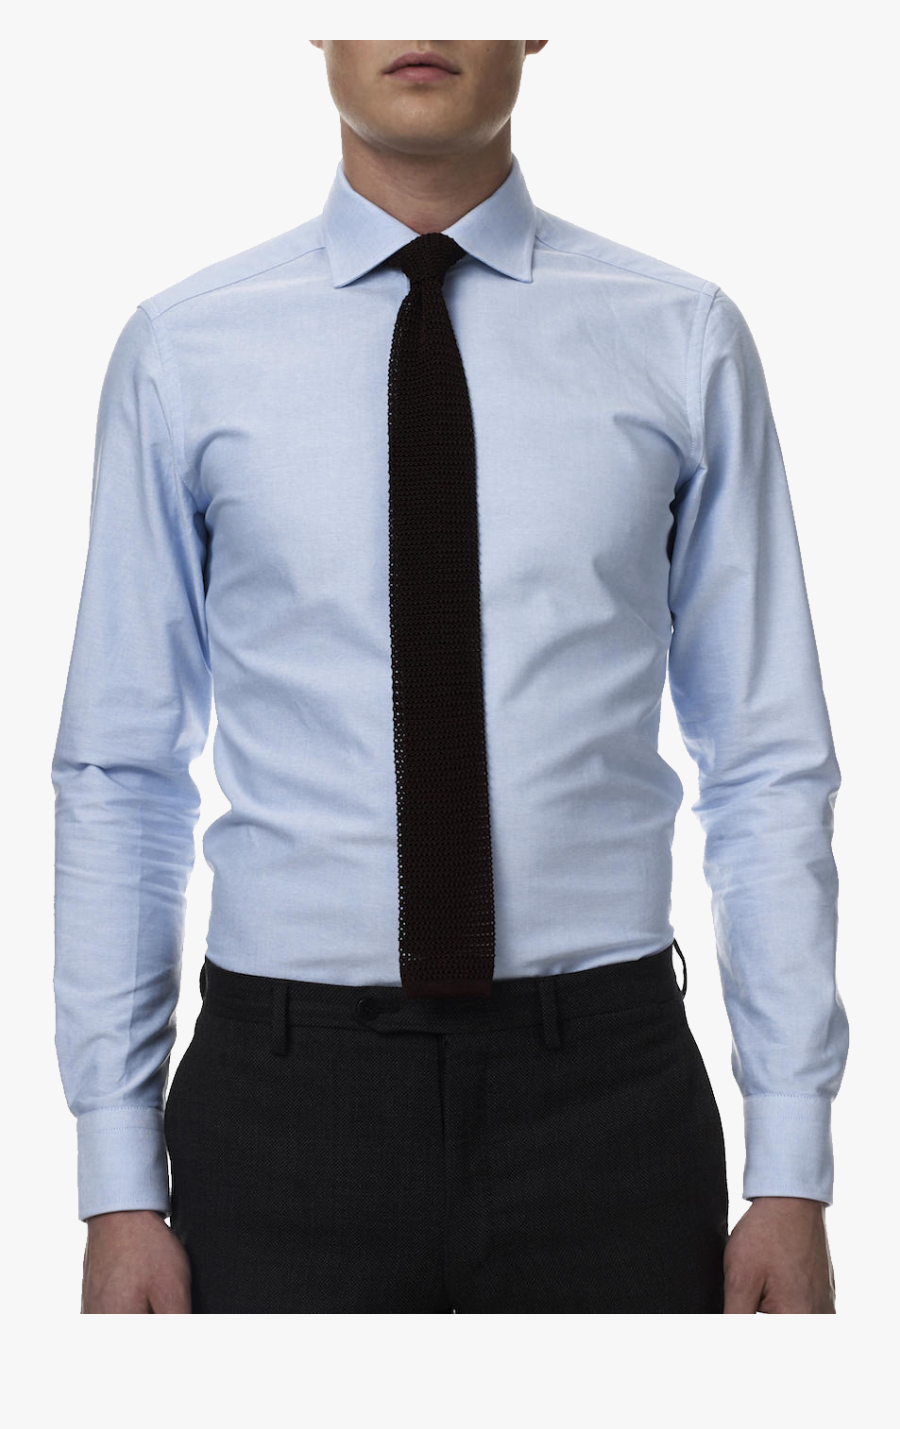 Shirt Clipart Pent Shirt - Light Blue Dress Shirt Black Tie, Transparent Clipart